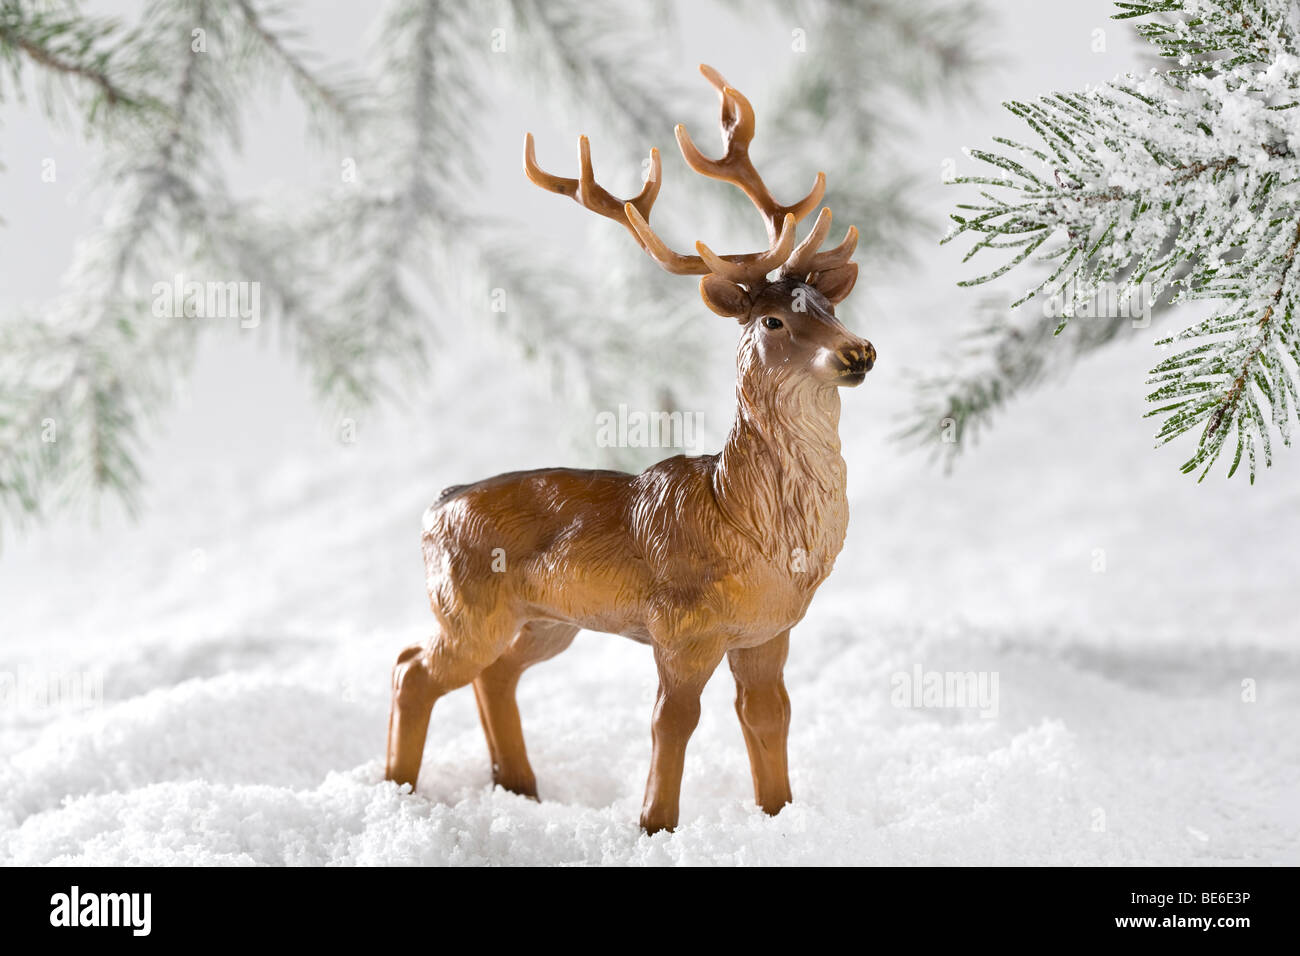 reindeer standing in winter landscape Stock Photo